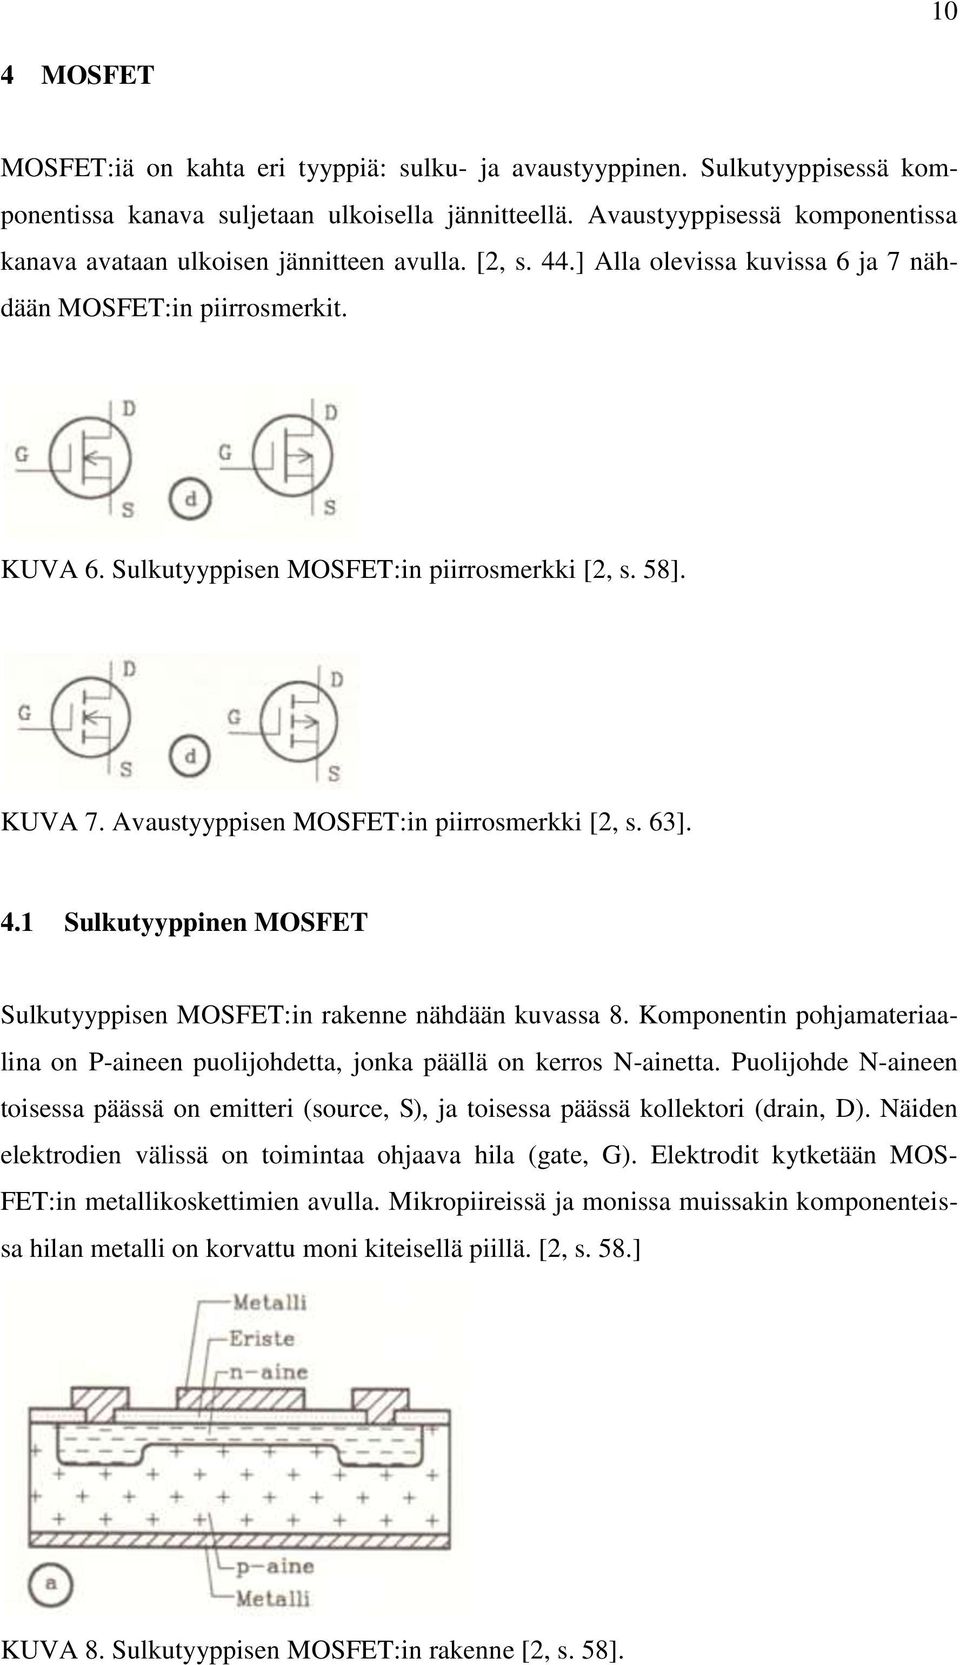 Sulkutyyppisen MOSFET:in piirrosmerkki [2, s. 58]. KUVA 7. Avaustyyppisen MOSFET:in piirrosmerkki [2, s. 63]. 4.1 Sulkutyyppinen MOSFET Sulkutyyppisen MOSFET:in rakenne nähdään kuvassa 8.